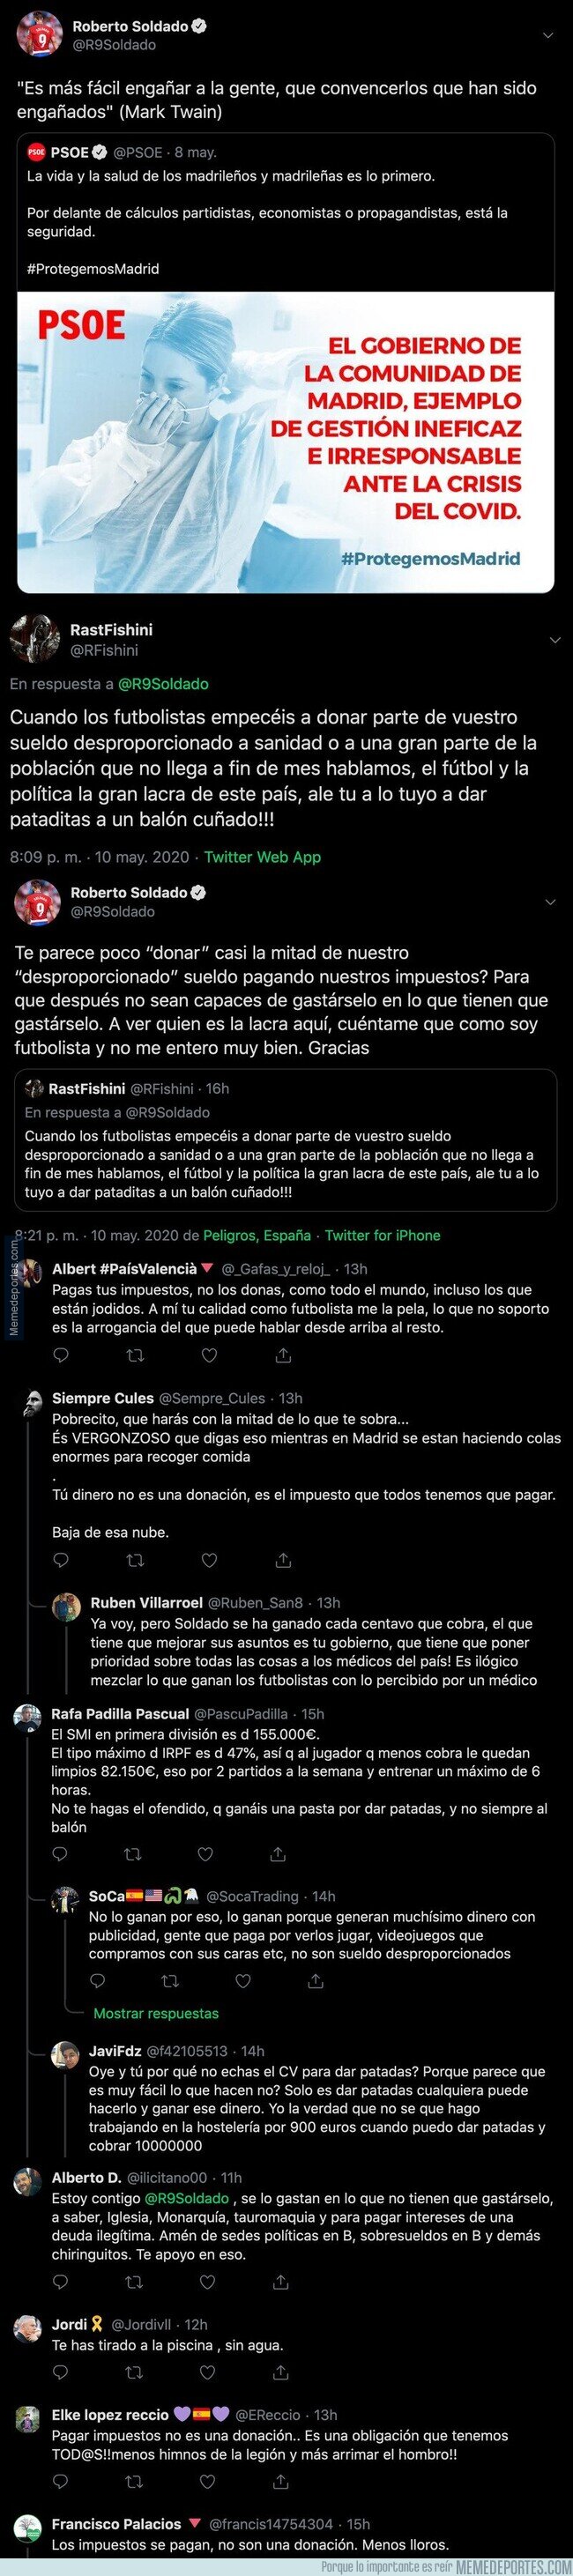 1104274 - Roberto Soldado ataca ferozmente al PSOE y sale totalmente escaldado por todas las respuestas que está recibiendo